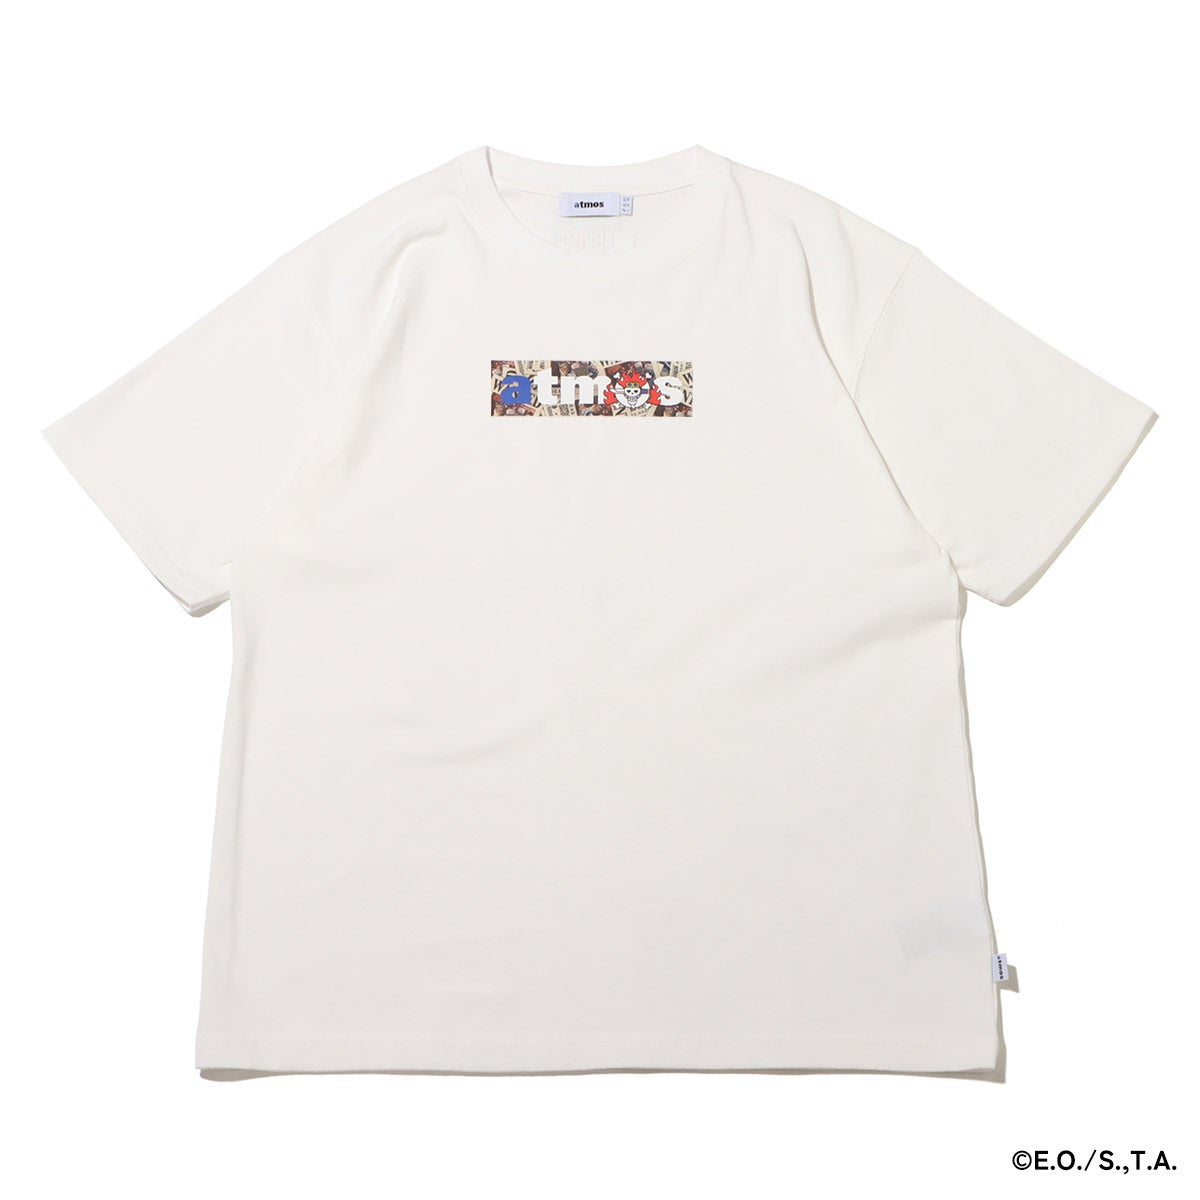 人気漫画「ONE PIECE」と「atmos」によるコラボレーションTシャツが登場。7月22日(土)〜7月30日(日)までatmos表参道、atmos京都にてPOP UP STOREも開催決定。